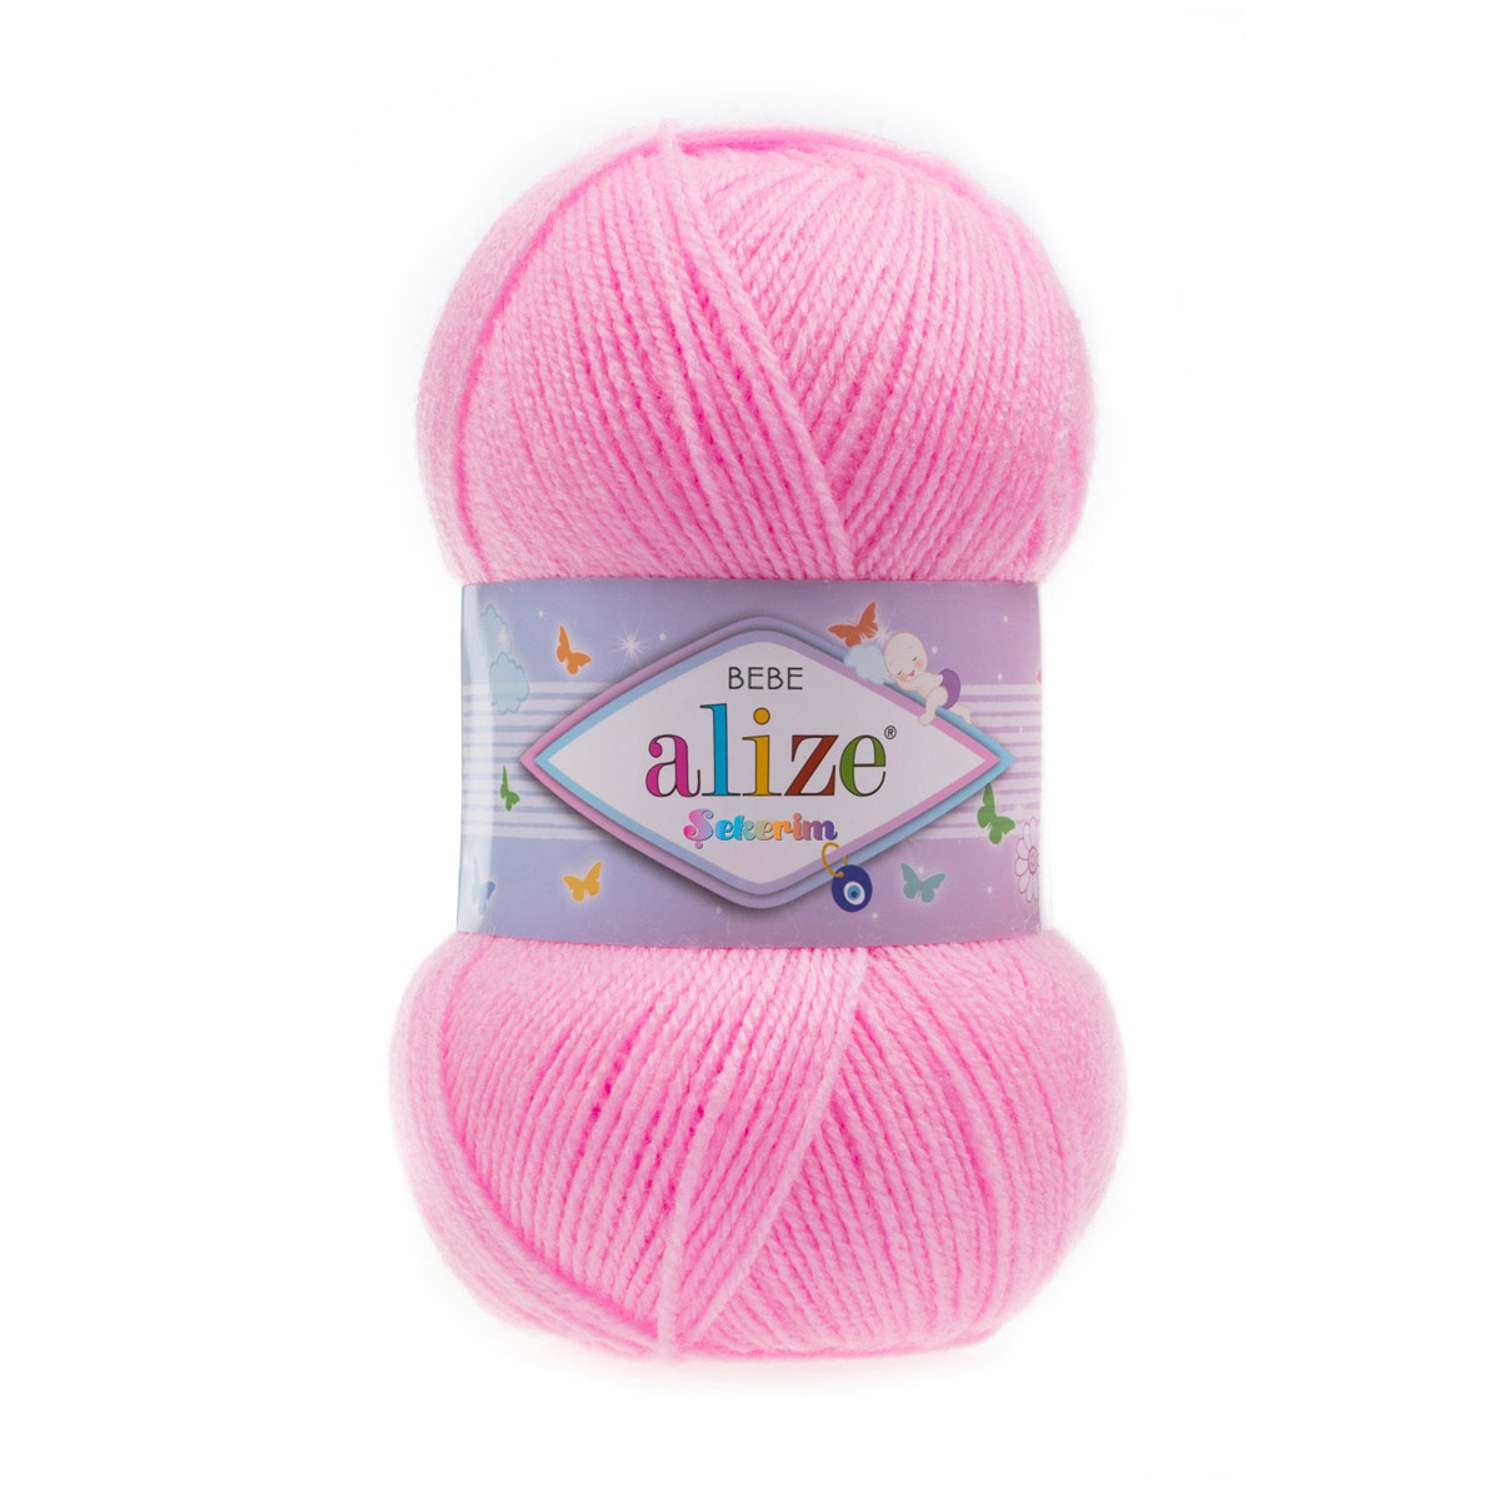 Пряжа для вязания Alize sekerim bebe 100 гр 320 м акрил для мягких игрушек 191 розовый 5 мотков - фото 3